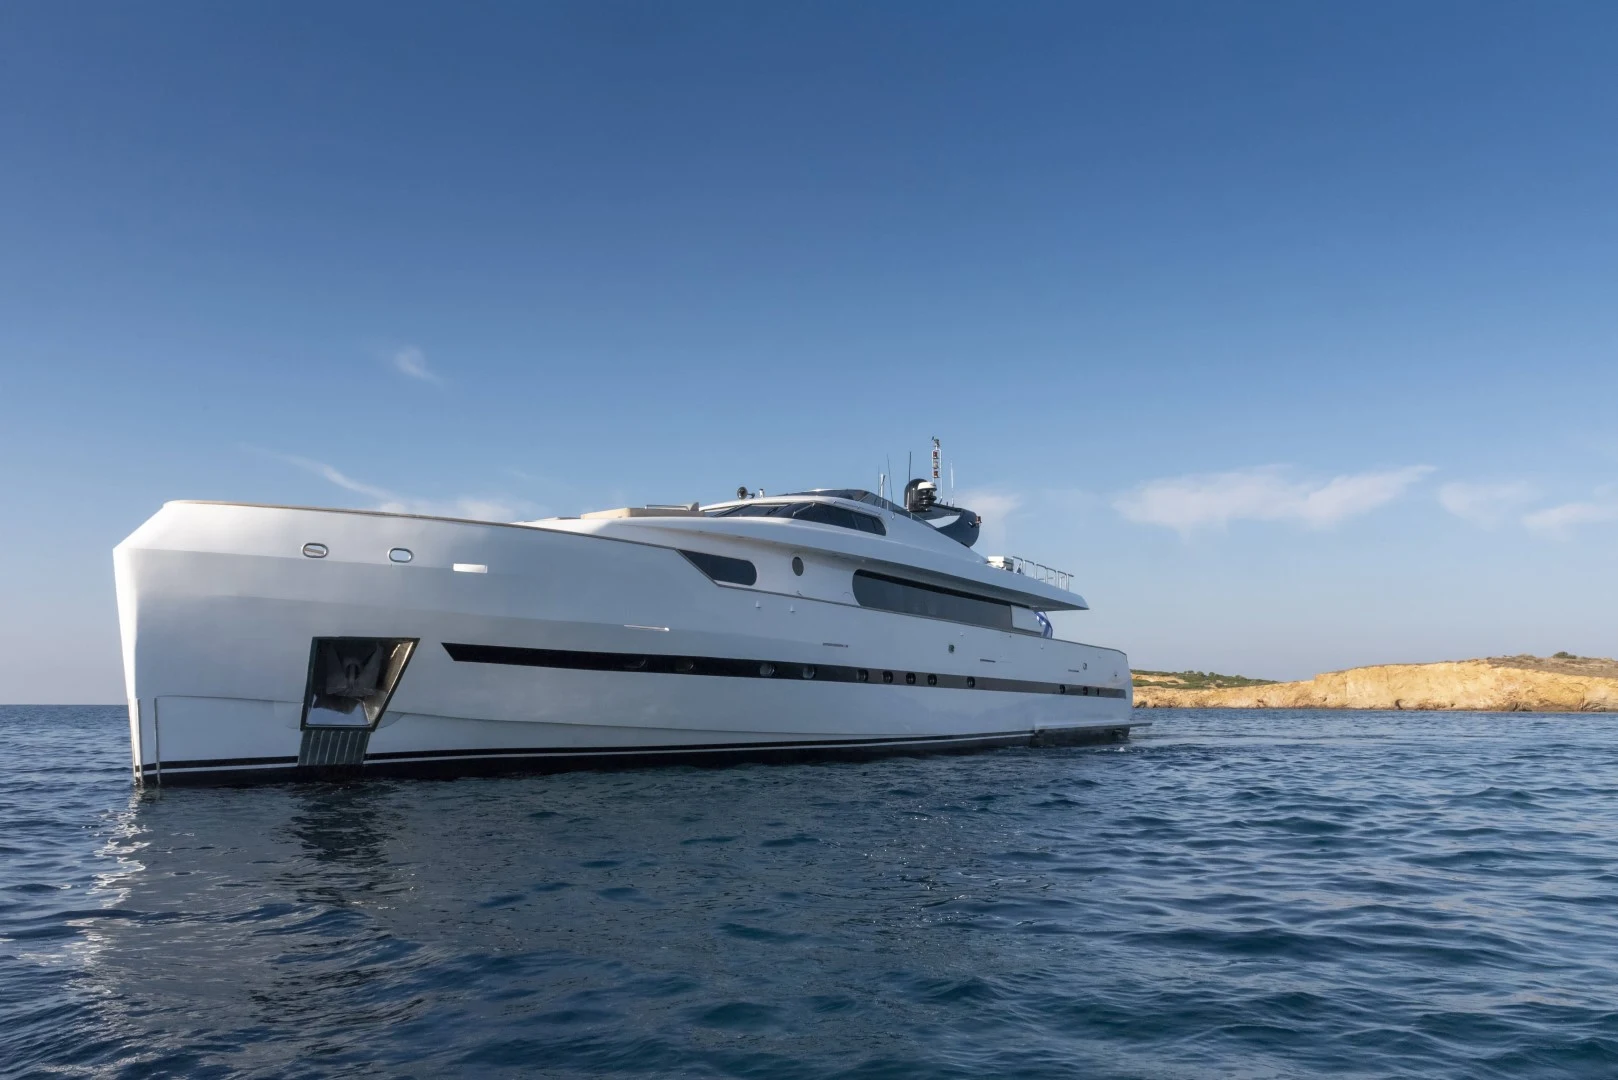 Luxury-yacht-Project-steel-from-side